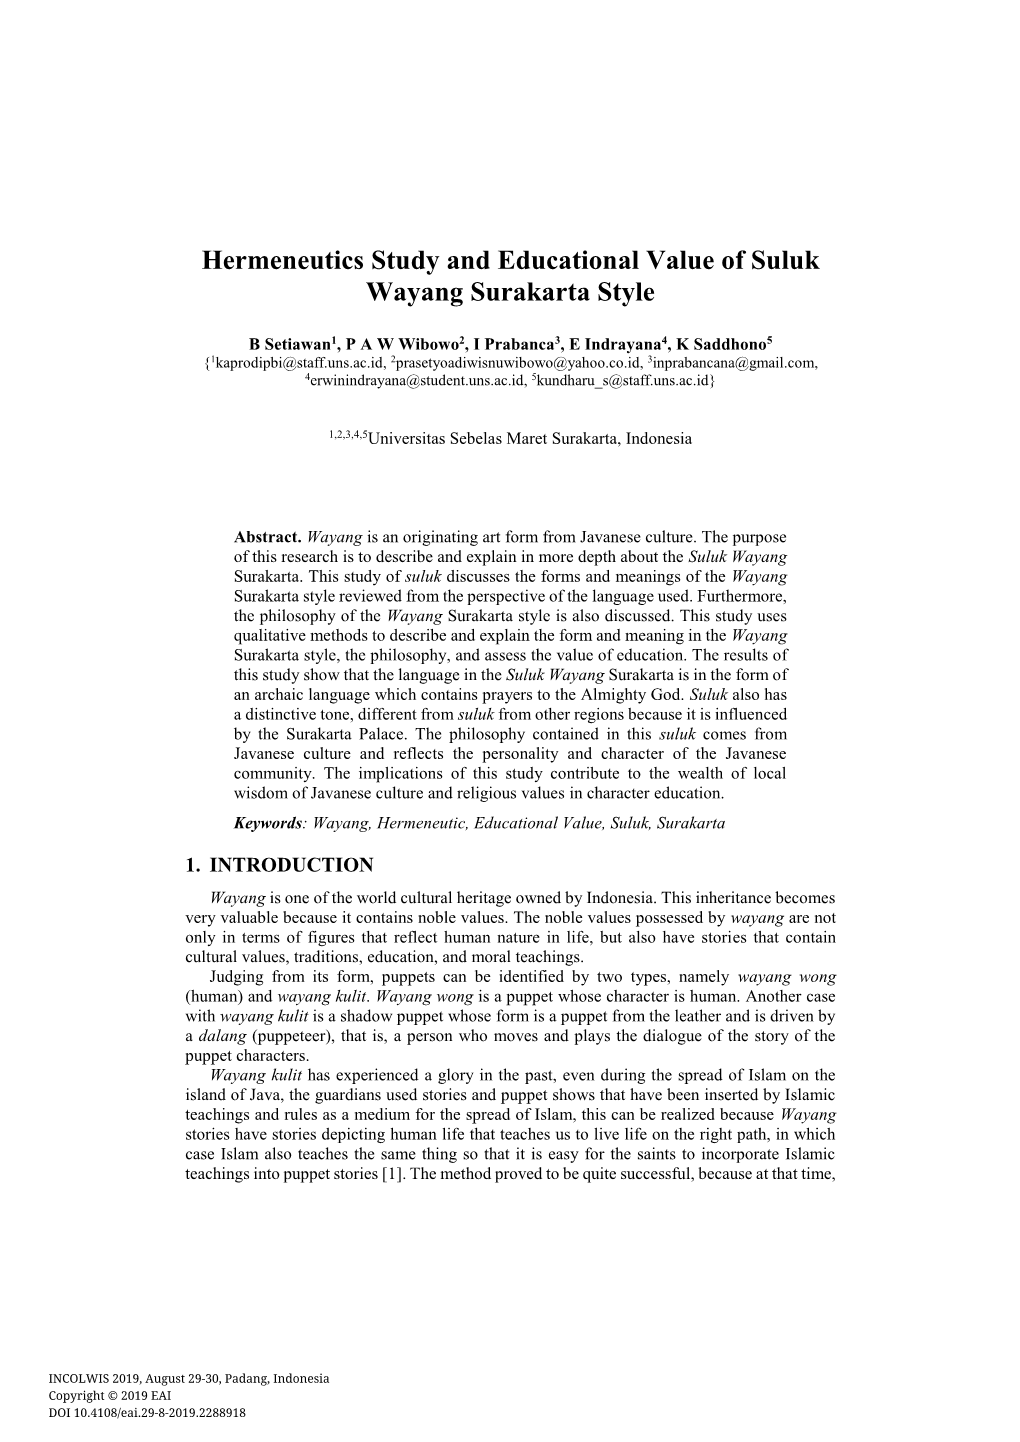 Hermeneutics Study and Educational Value of Suluk Wayang Surakarta Style